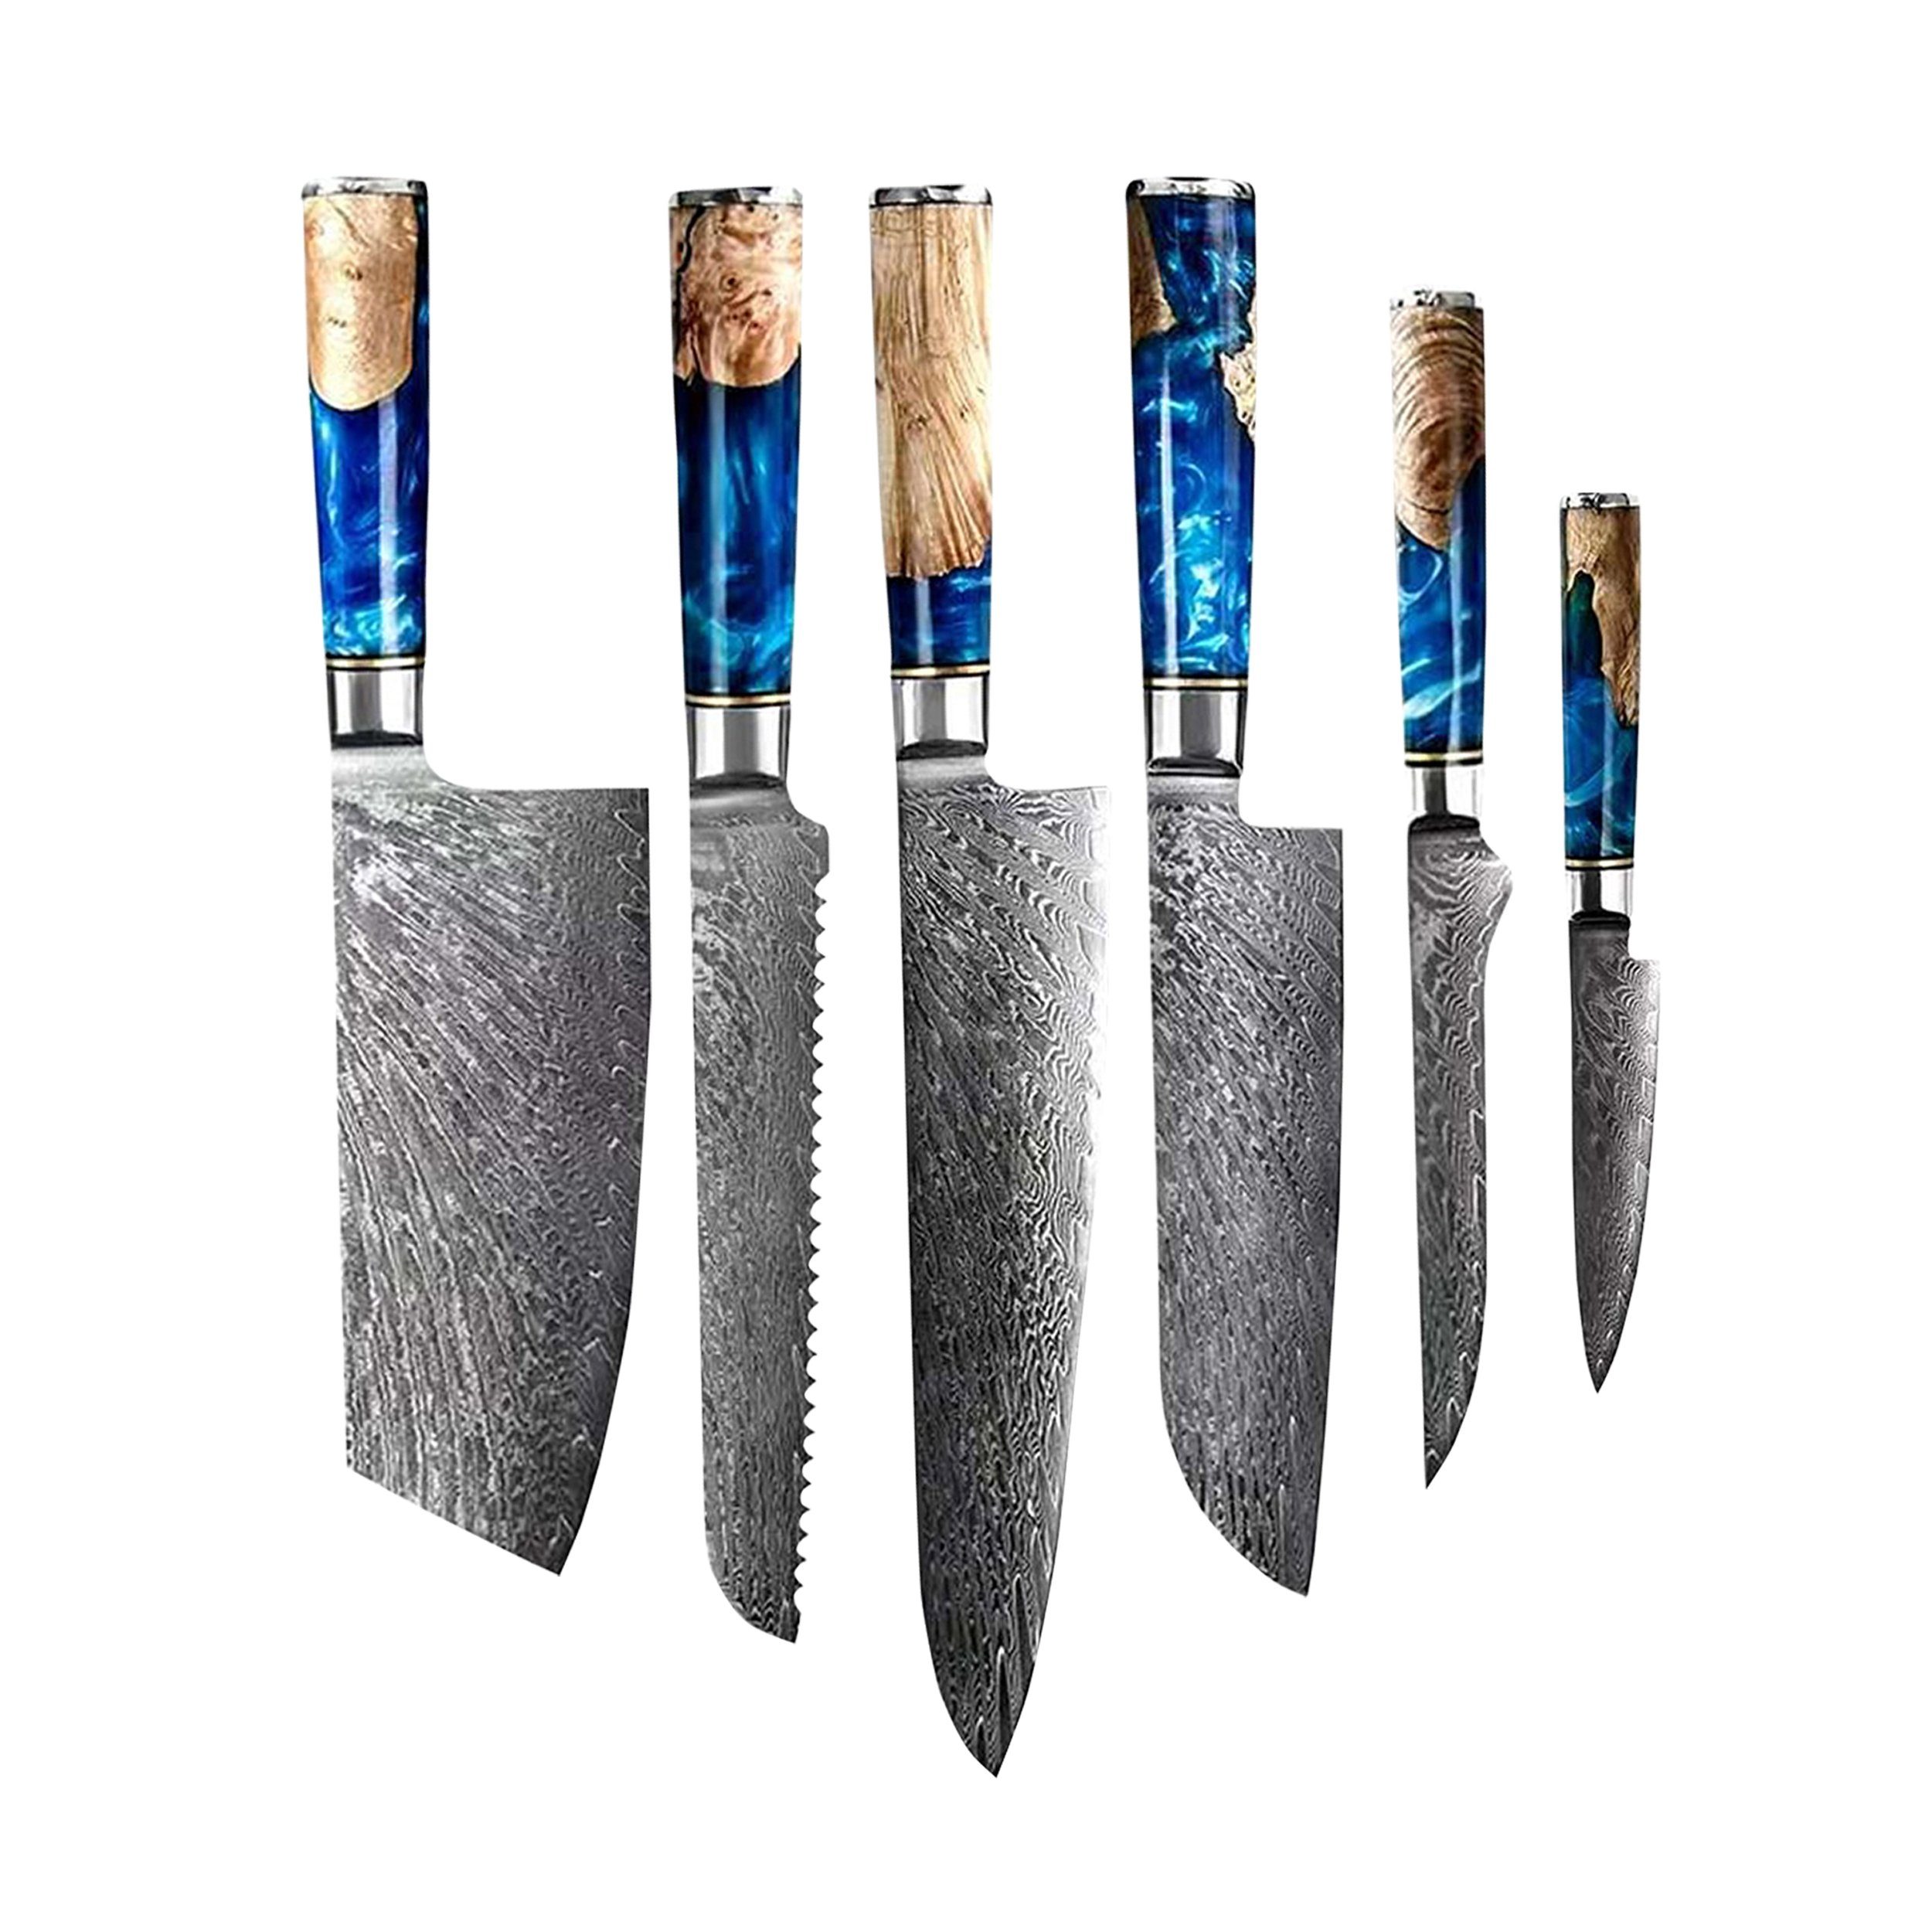 Shinrai Japan Messer-Set Messerset - 6-teiliges Damastmesser Set - Messer Epoxy Sapphire, Handgefertigt bis ins Detail